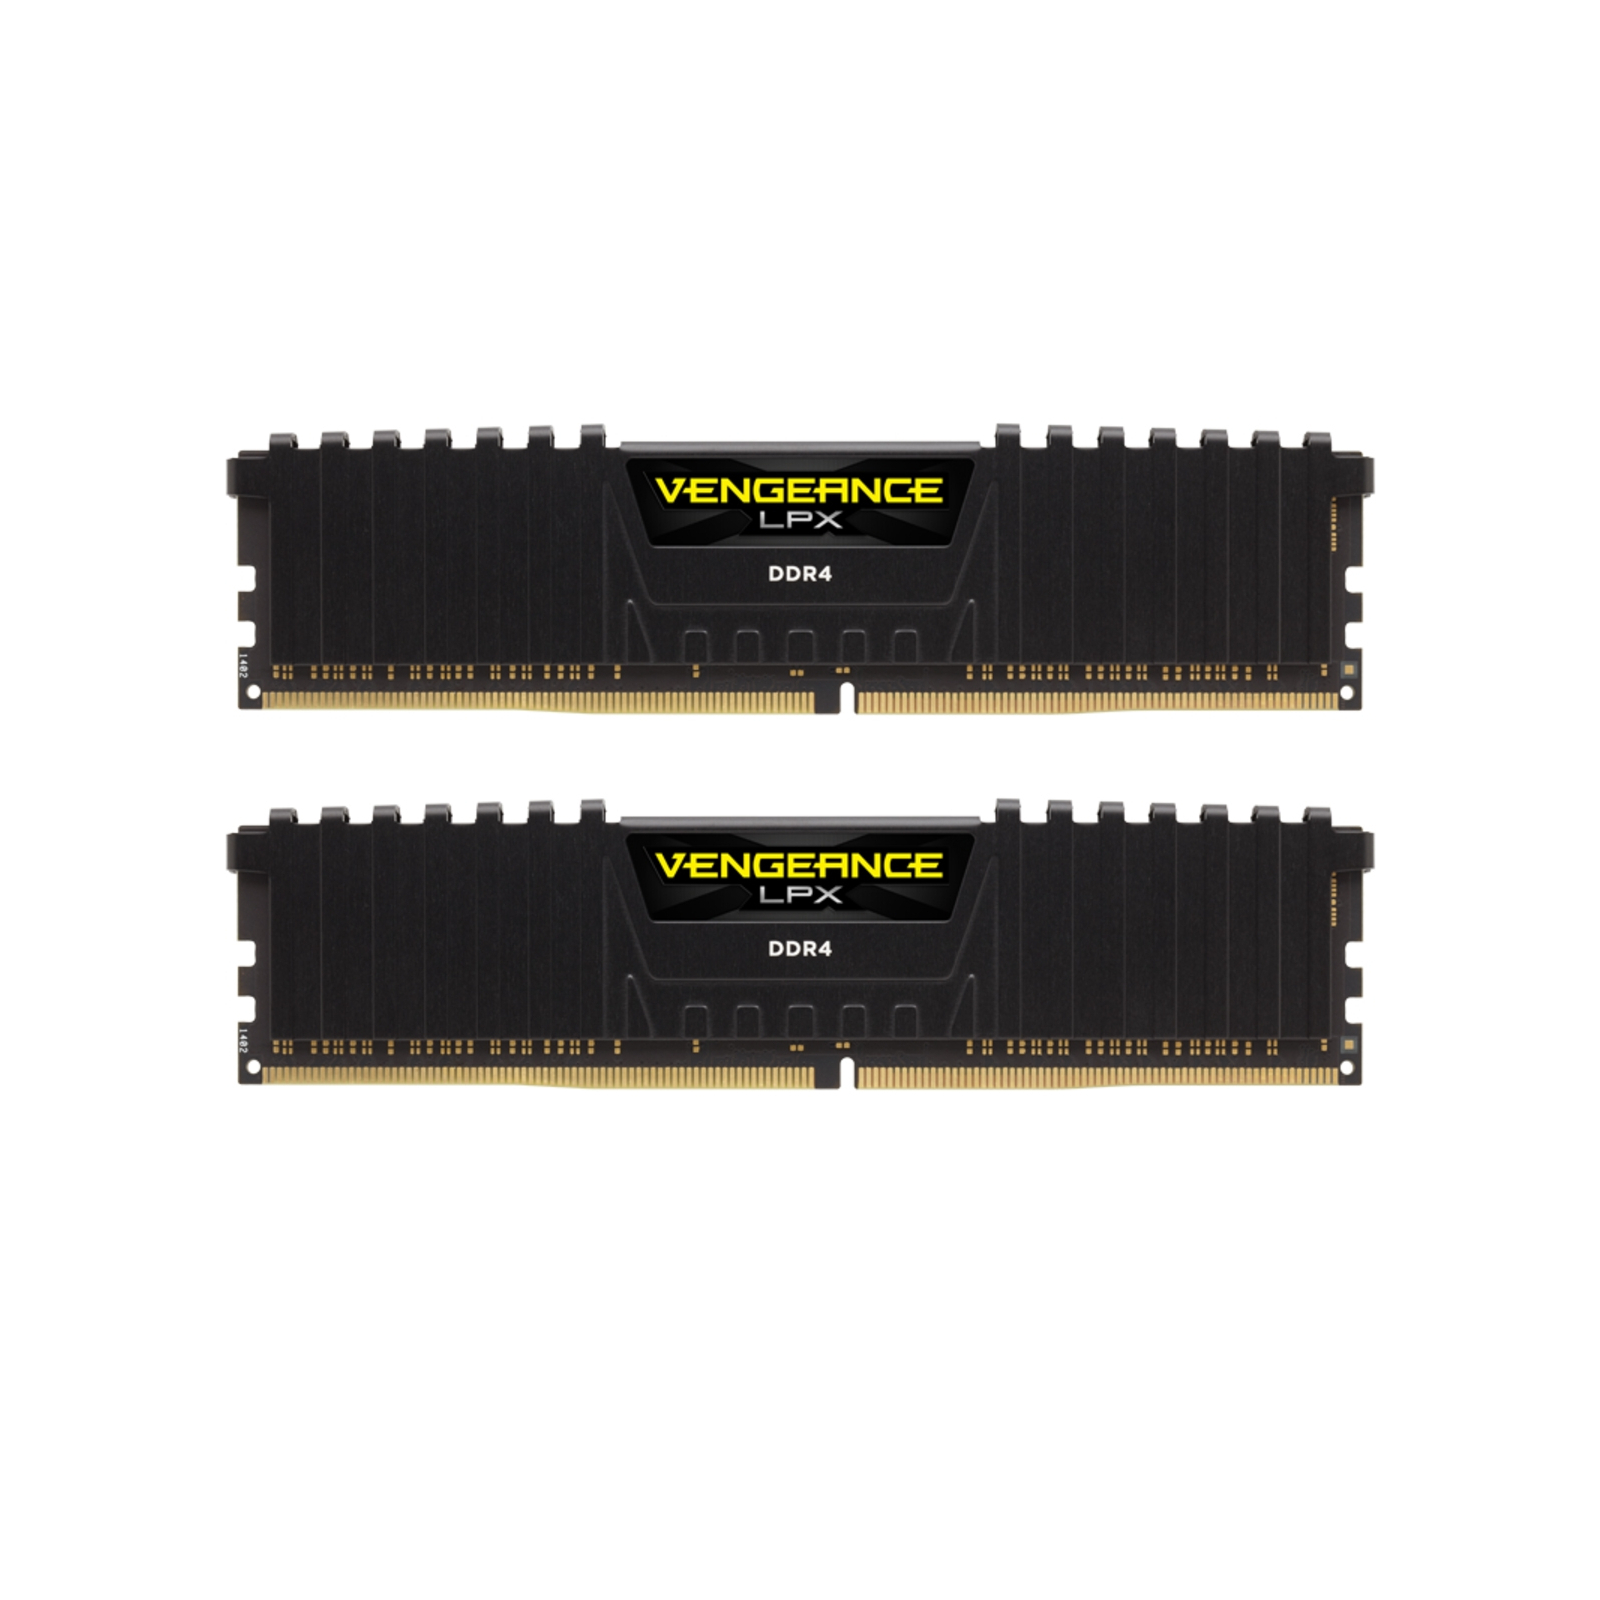 Модуль пам'яті для комп'ютера DDR4 32GB (2x16GB) 3200 MHz Vengeance LPX Black Corsair (CMK32GX4M2E3200C16)